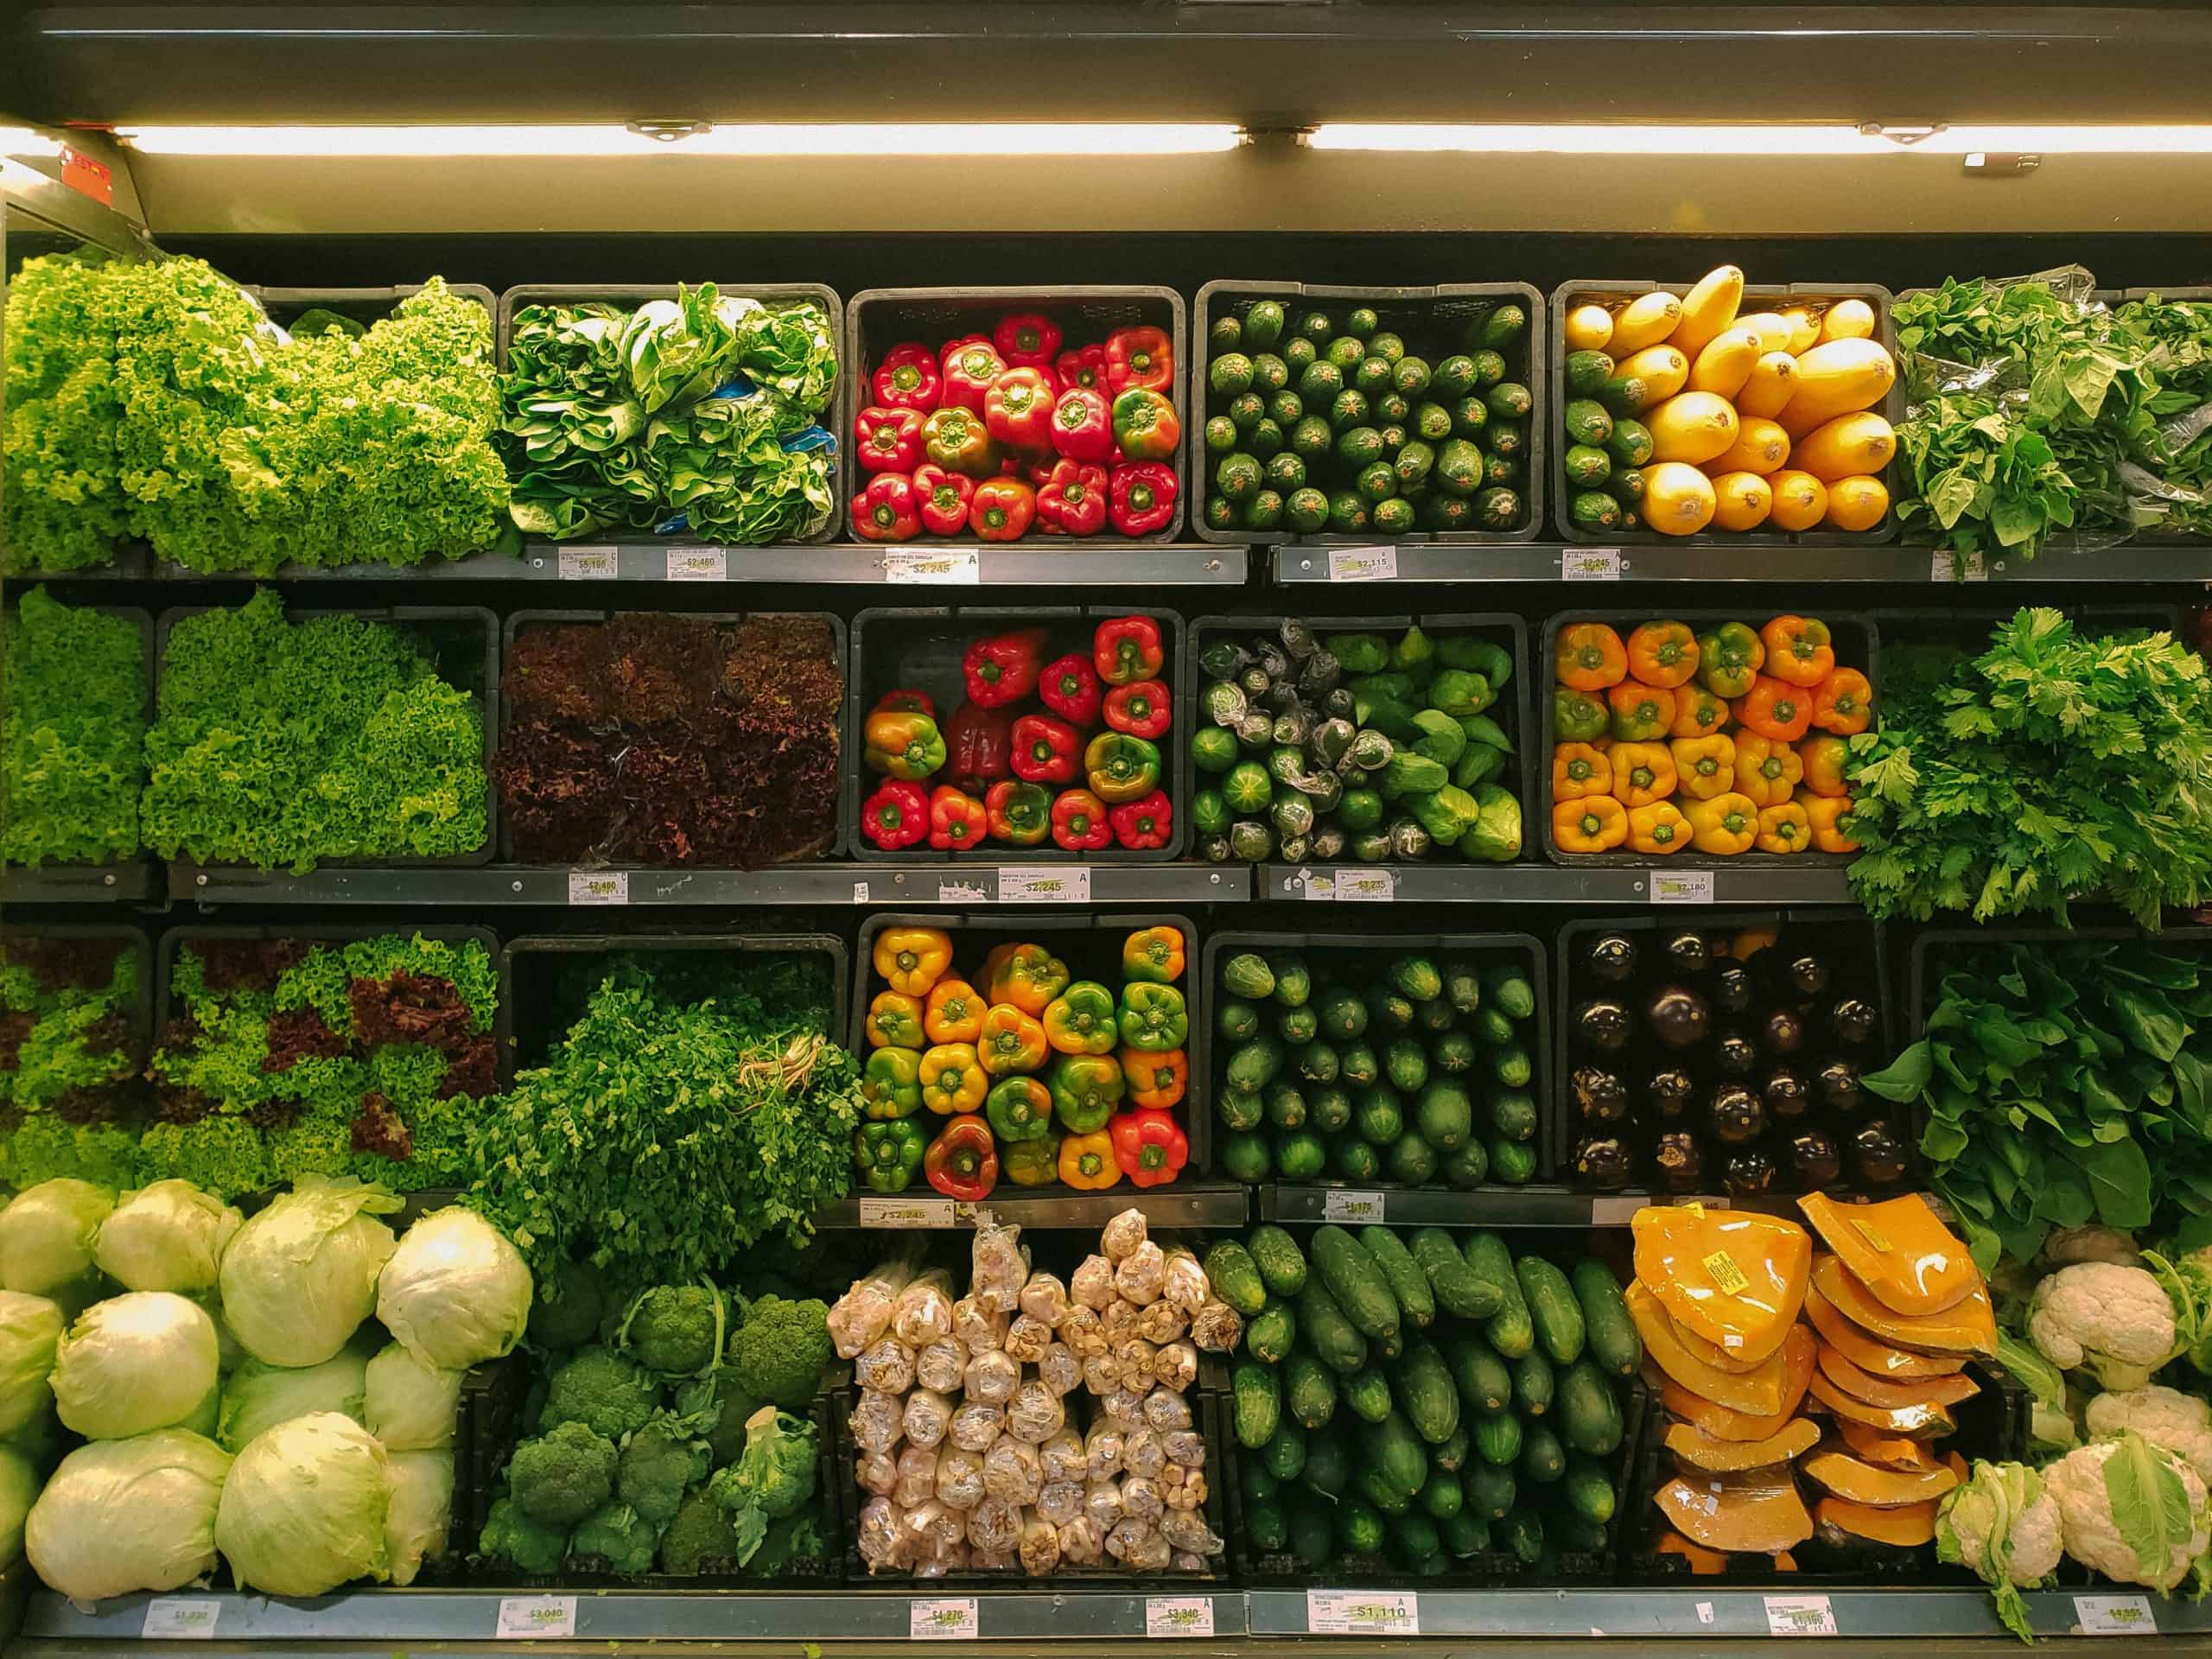 Full grocery store shelves